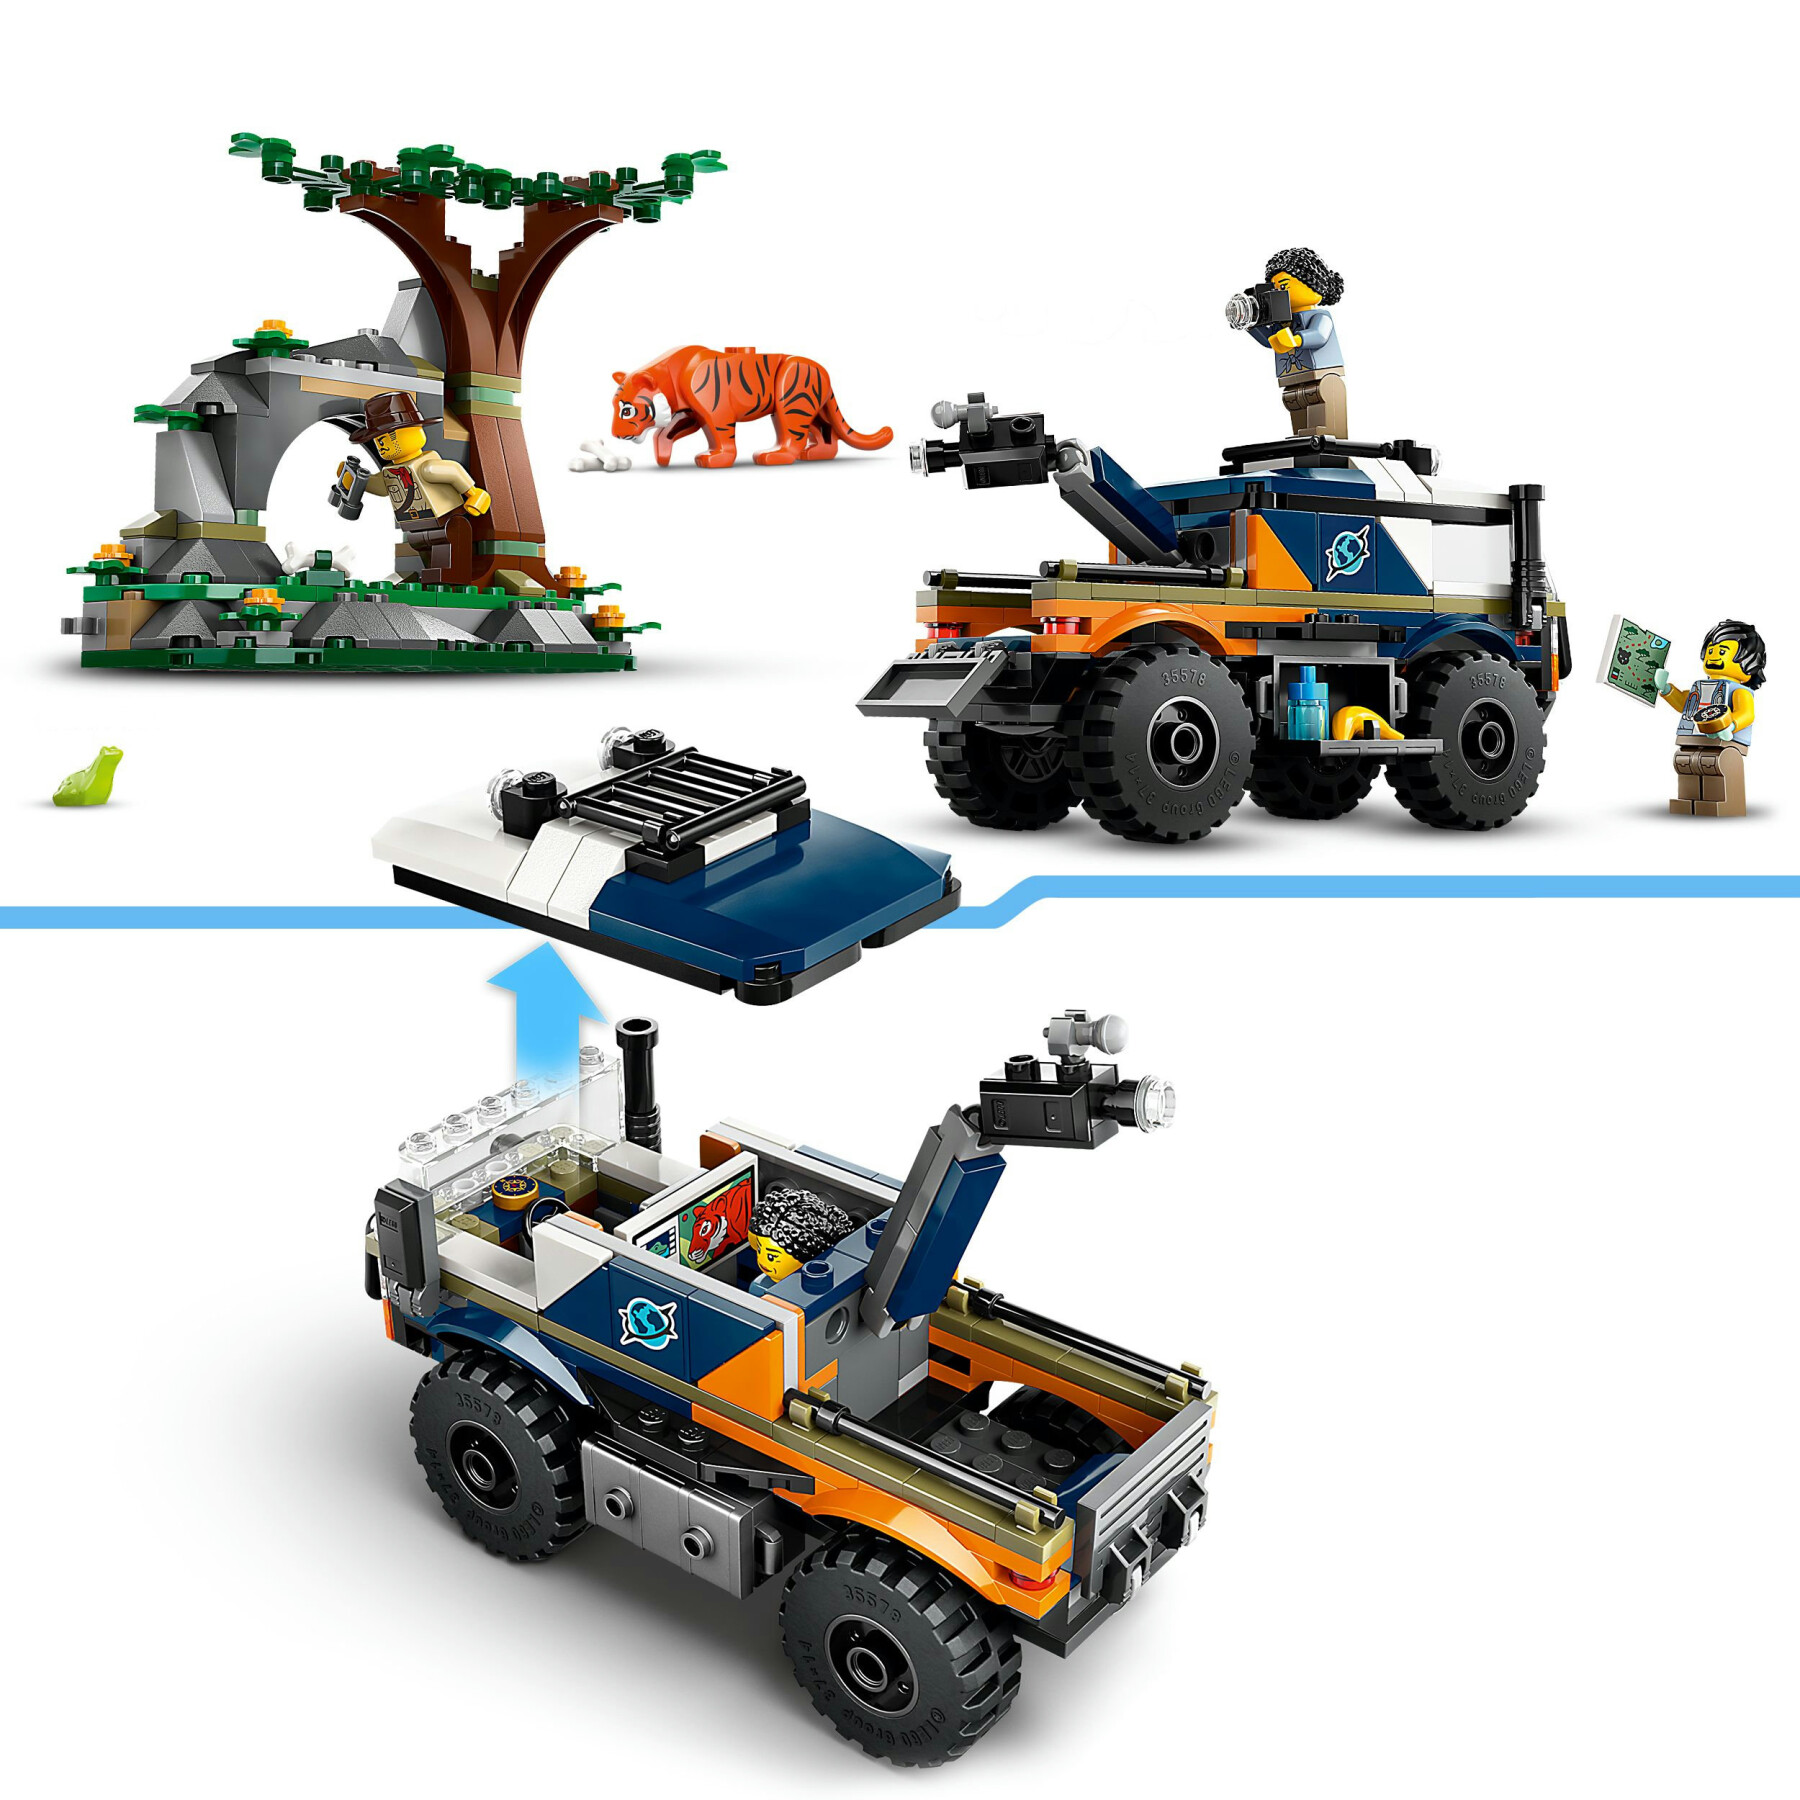 Lego city 60426 fuoristrada dell’esploratore della giungla, camion giocattolo con minifigure e tigre, giochi per bambini 6+ - LEGO CITY